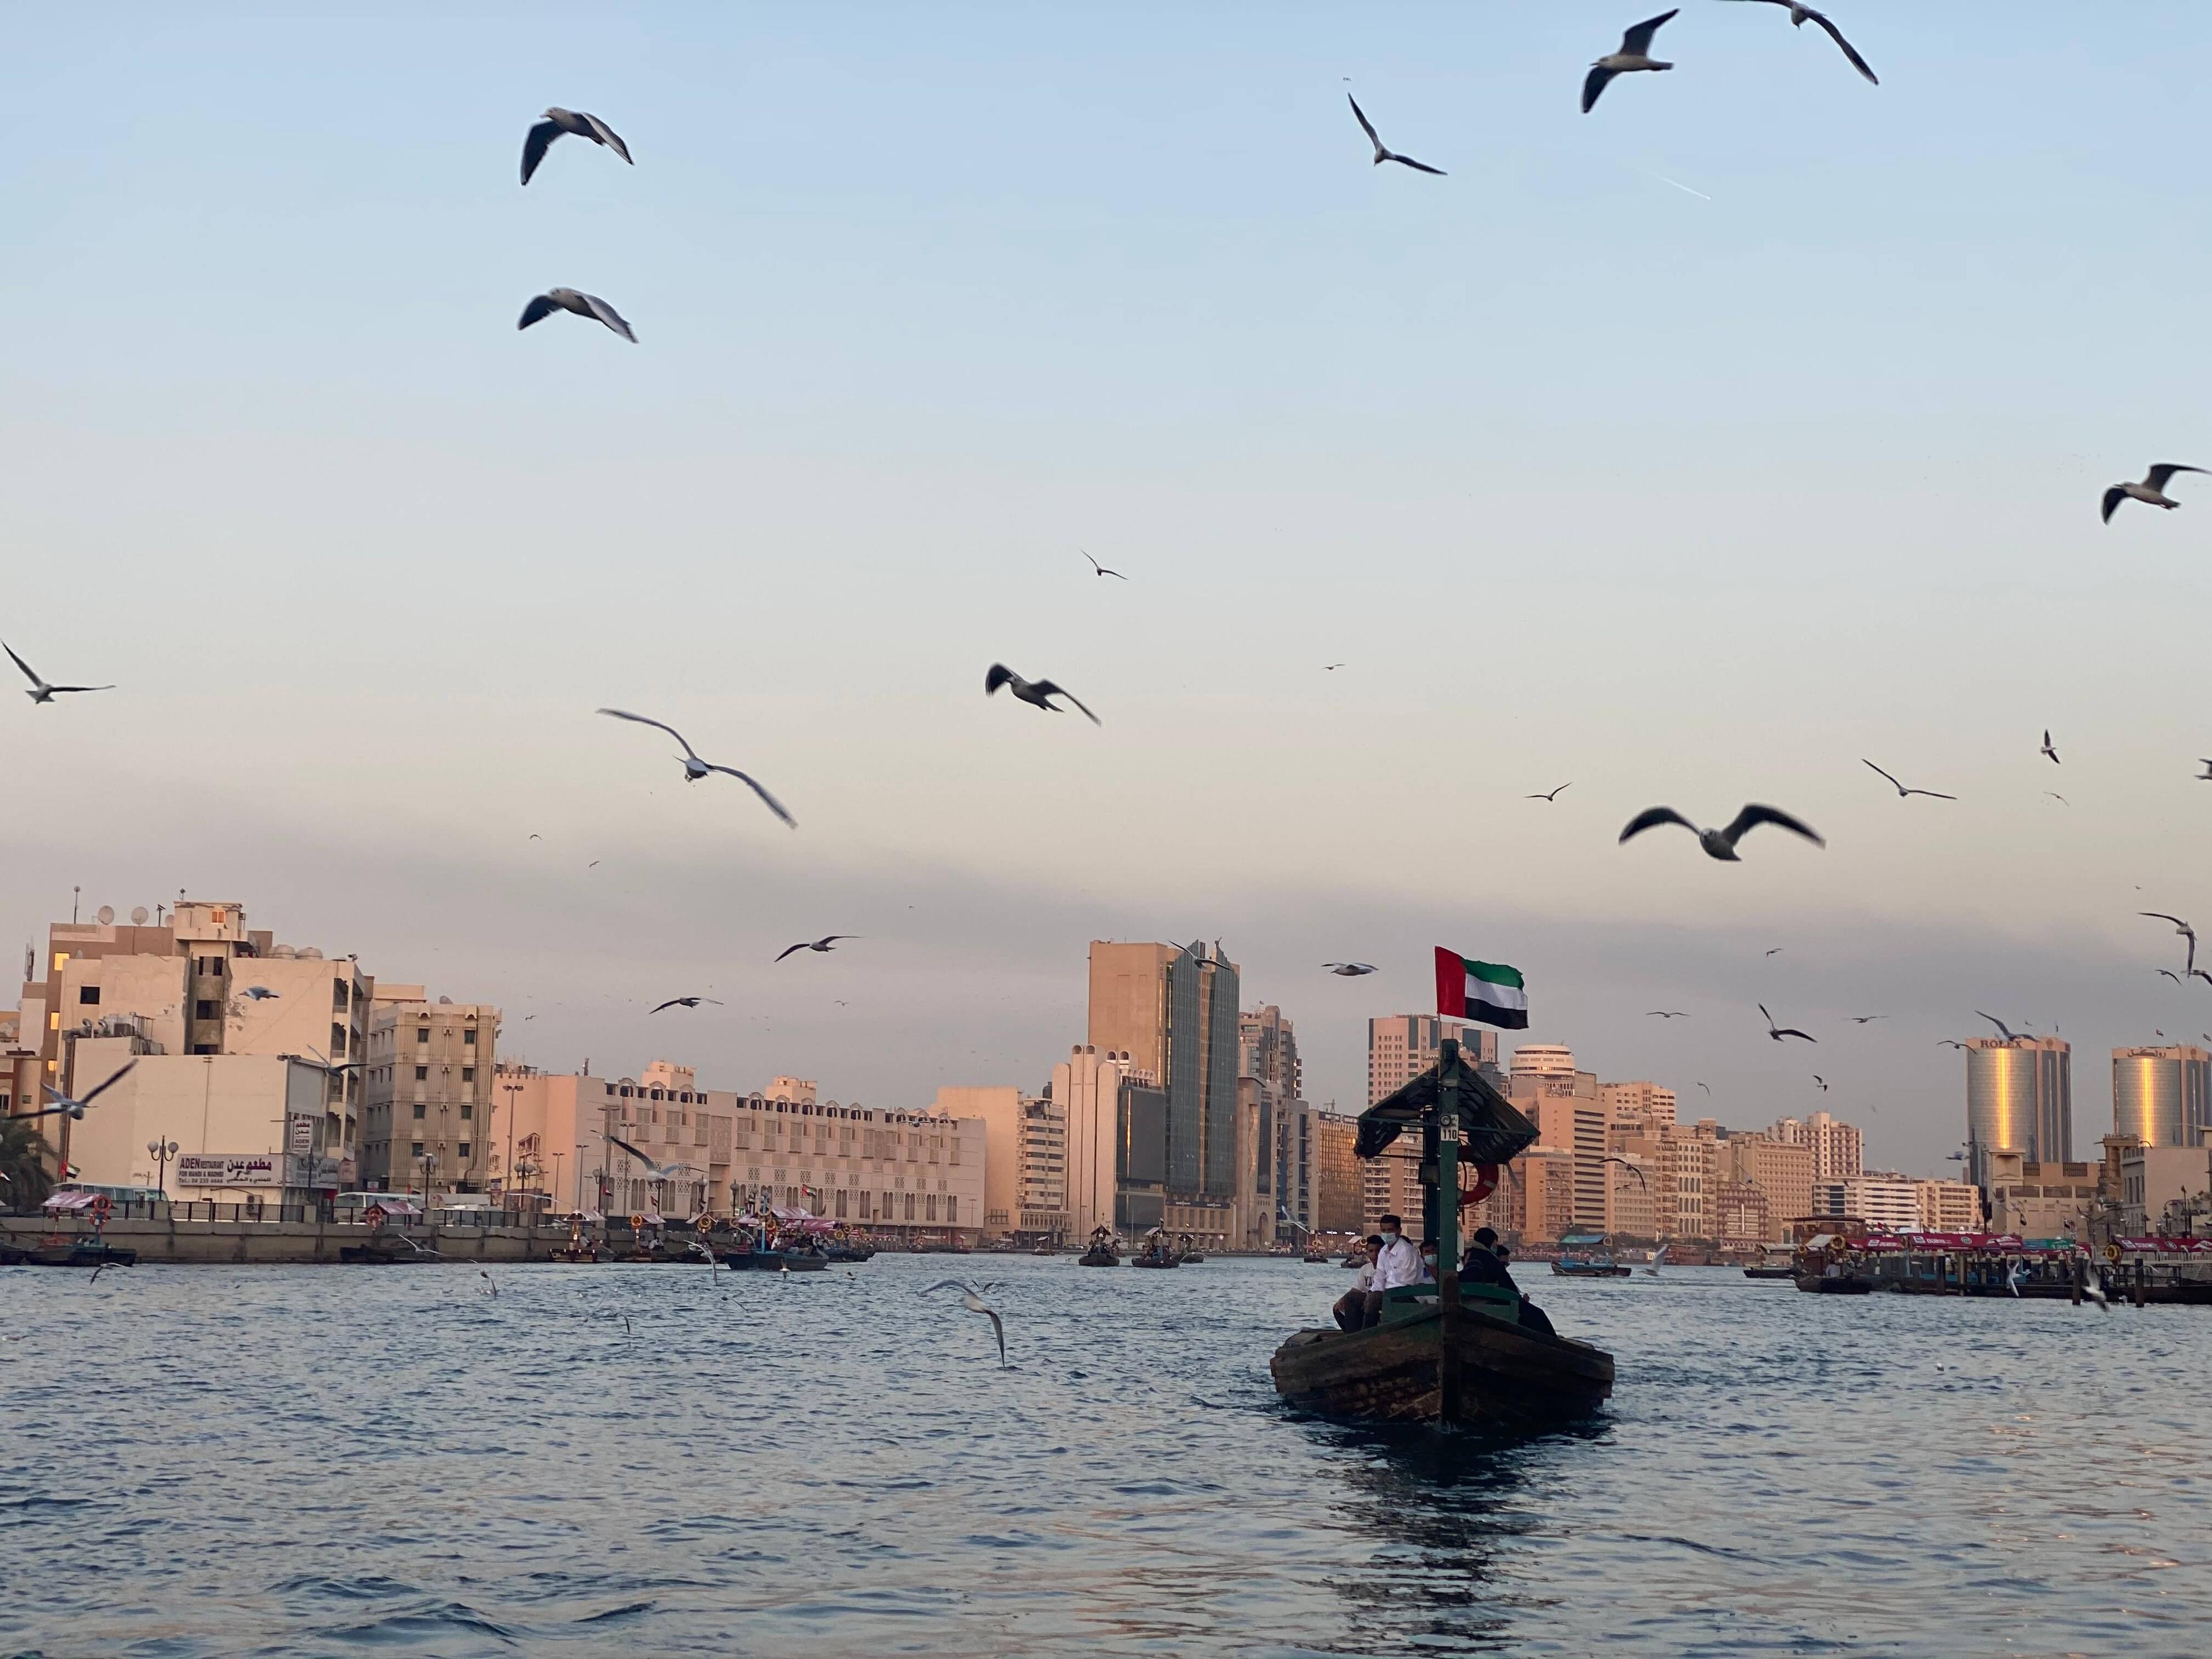 يرفرف علم دولة الإمارات بفخر على صاري قارب العبرة، التي تنقل الركاب عبر خور دبي. والعبرة هي واحدة من الأشكال الأولى من وسائل المواصلات العامة في دولة الإمارات.
المصور: منى الزعابي